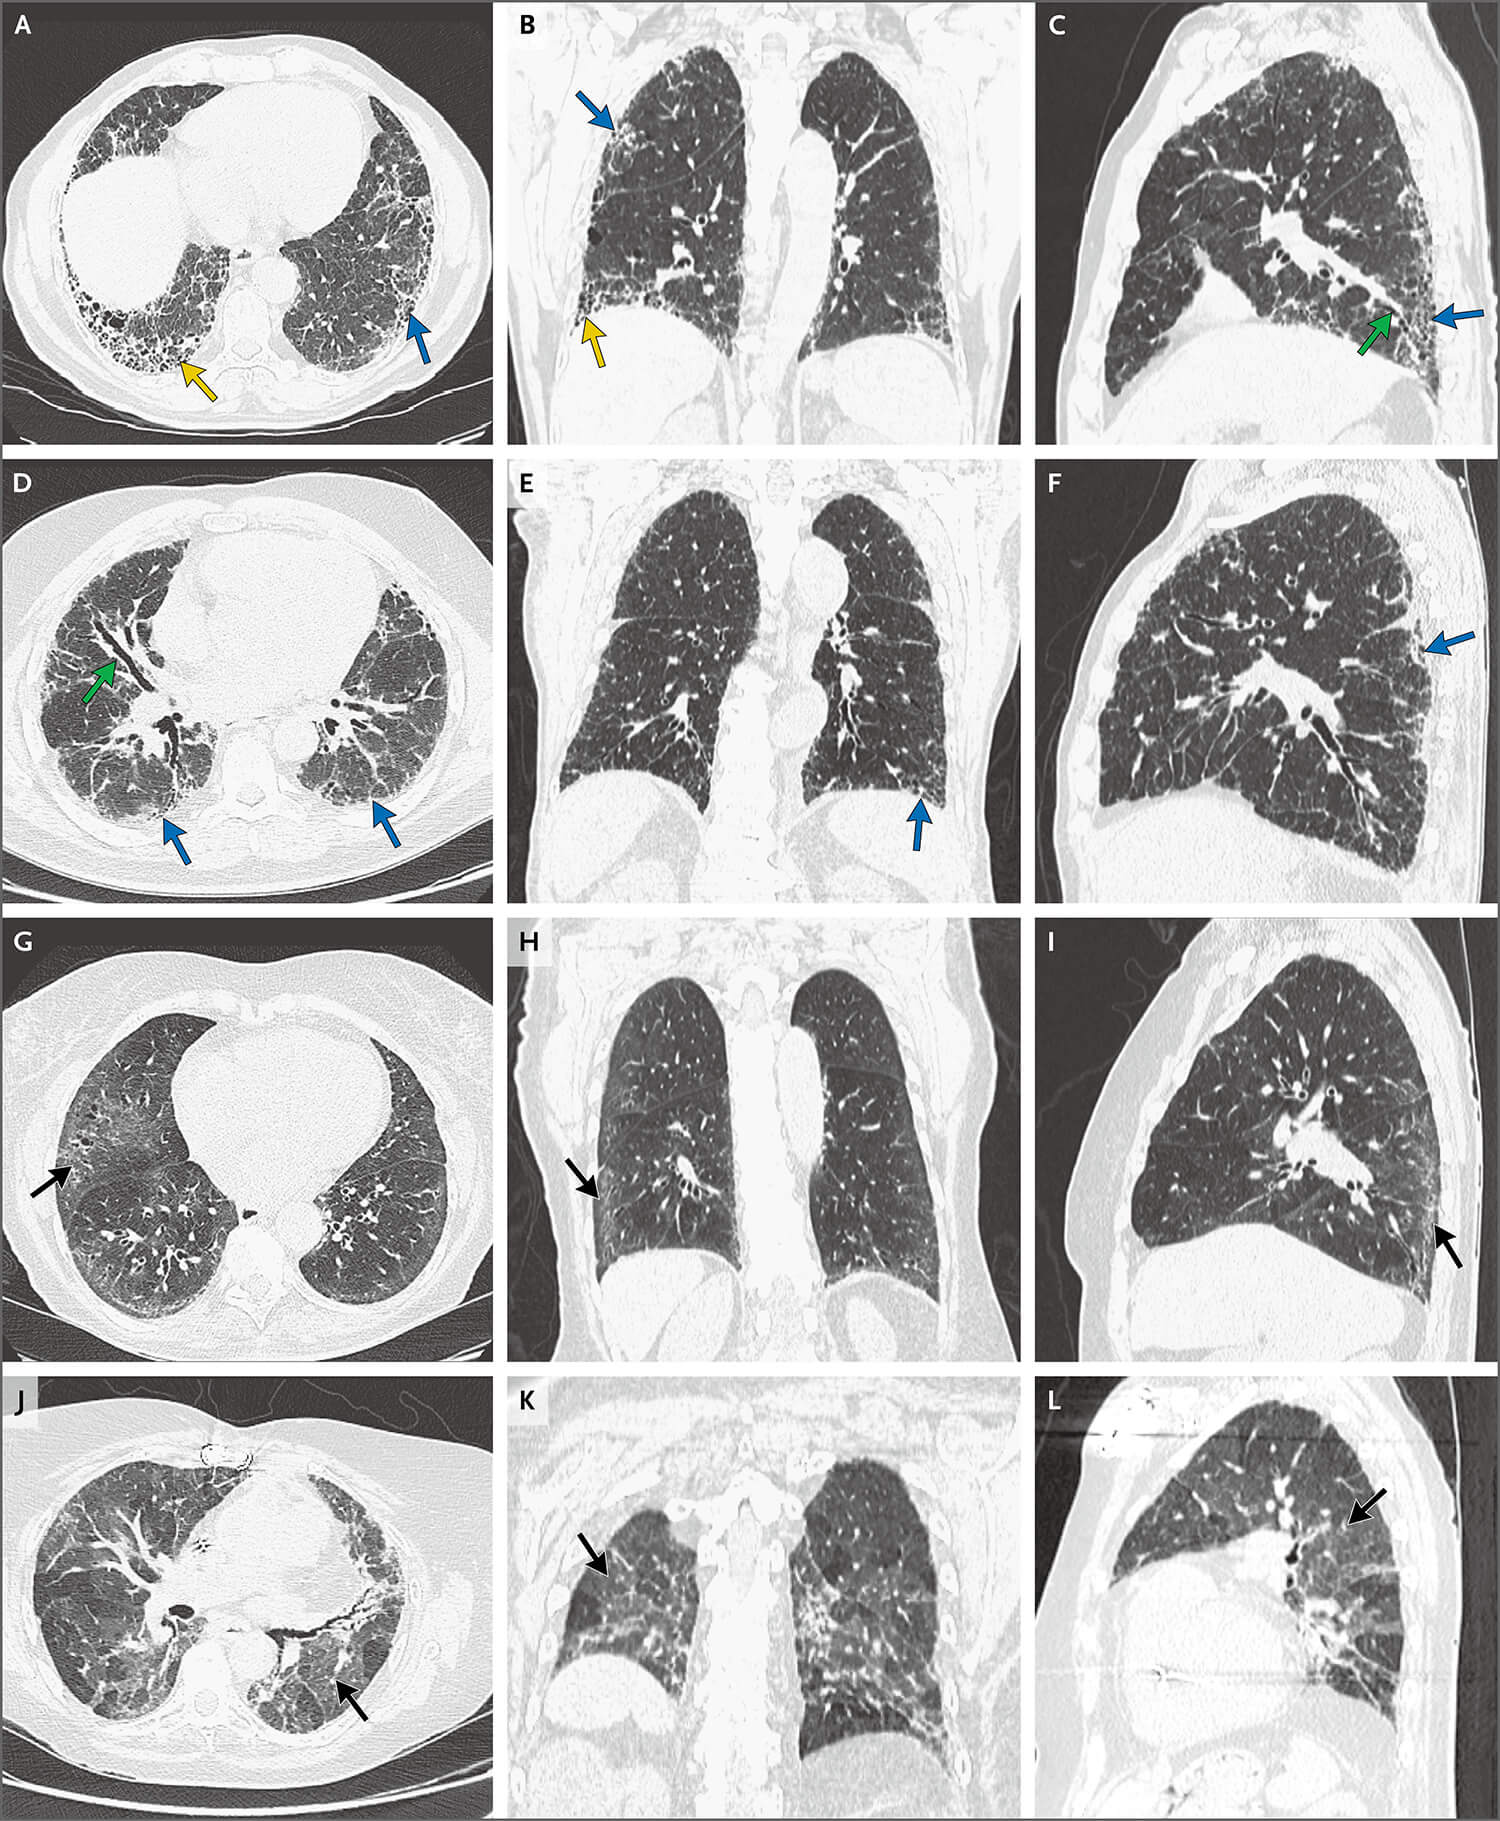 肺间质纤维化合并气胸 - 病例中心(诊疗助手) - 爱爱医医学网